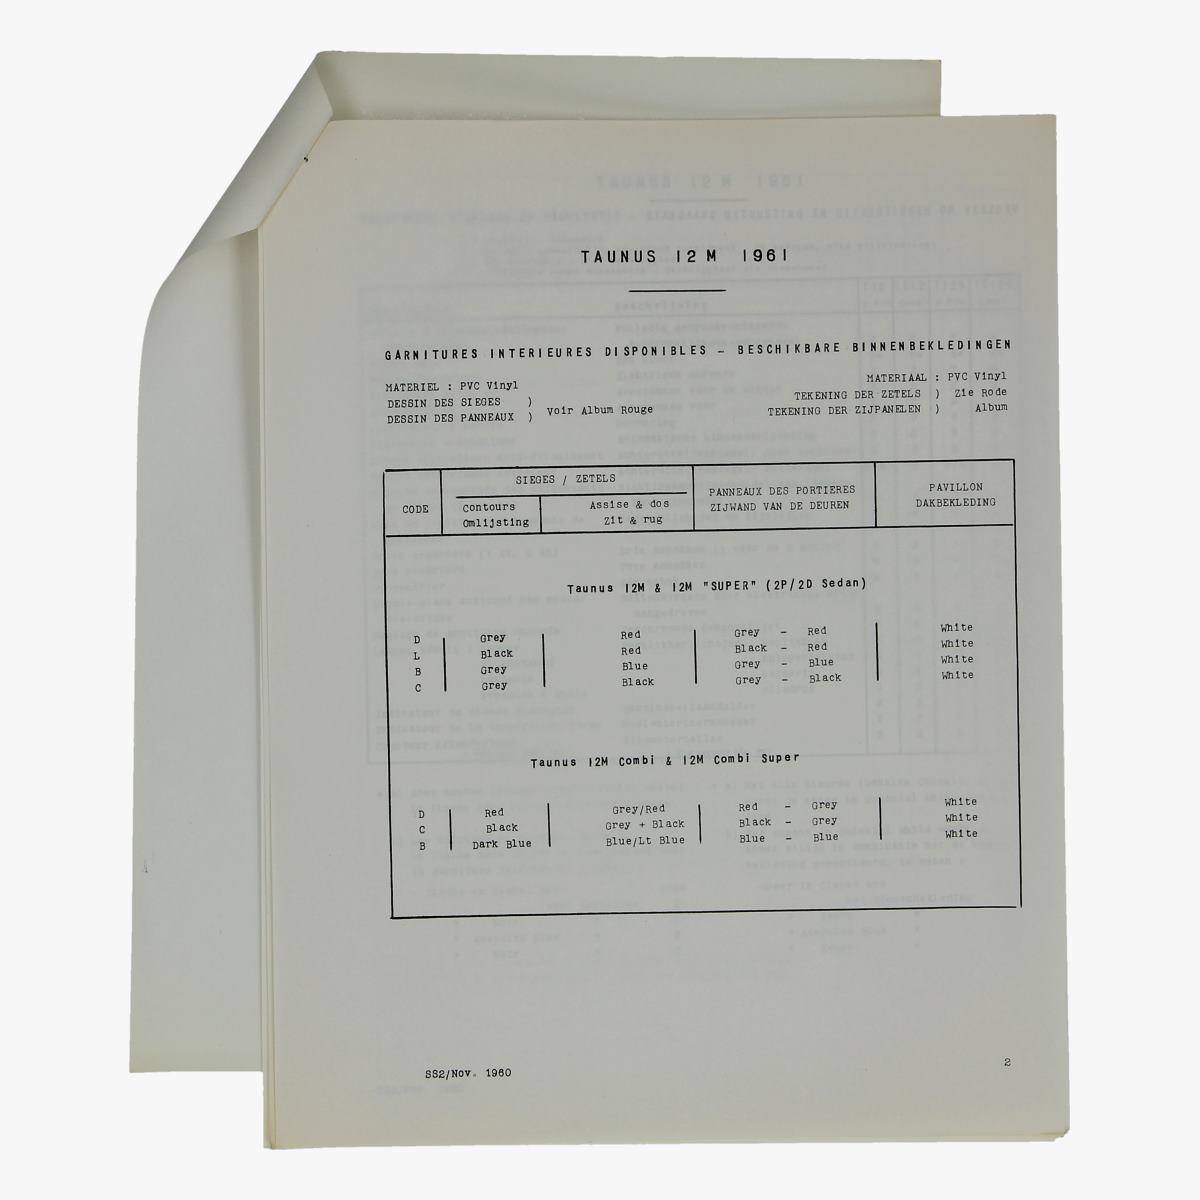 Afbeeldingen van oude folder taunus 12m 1961